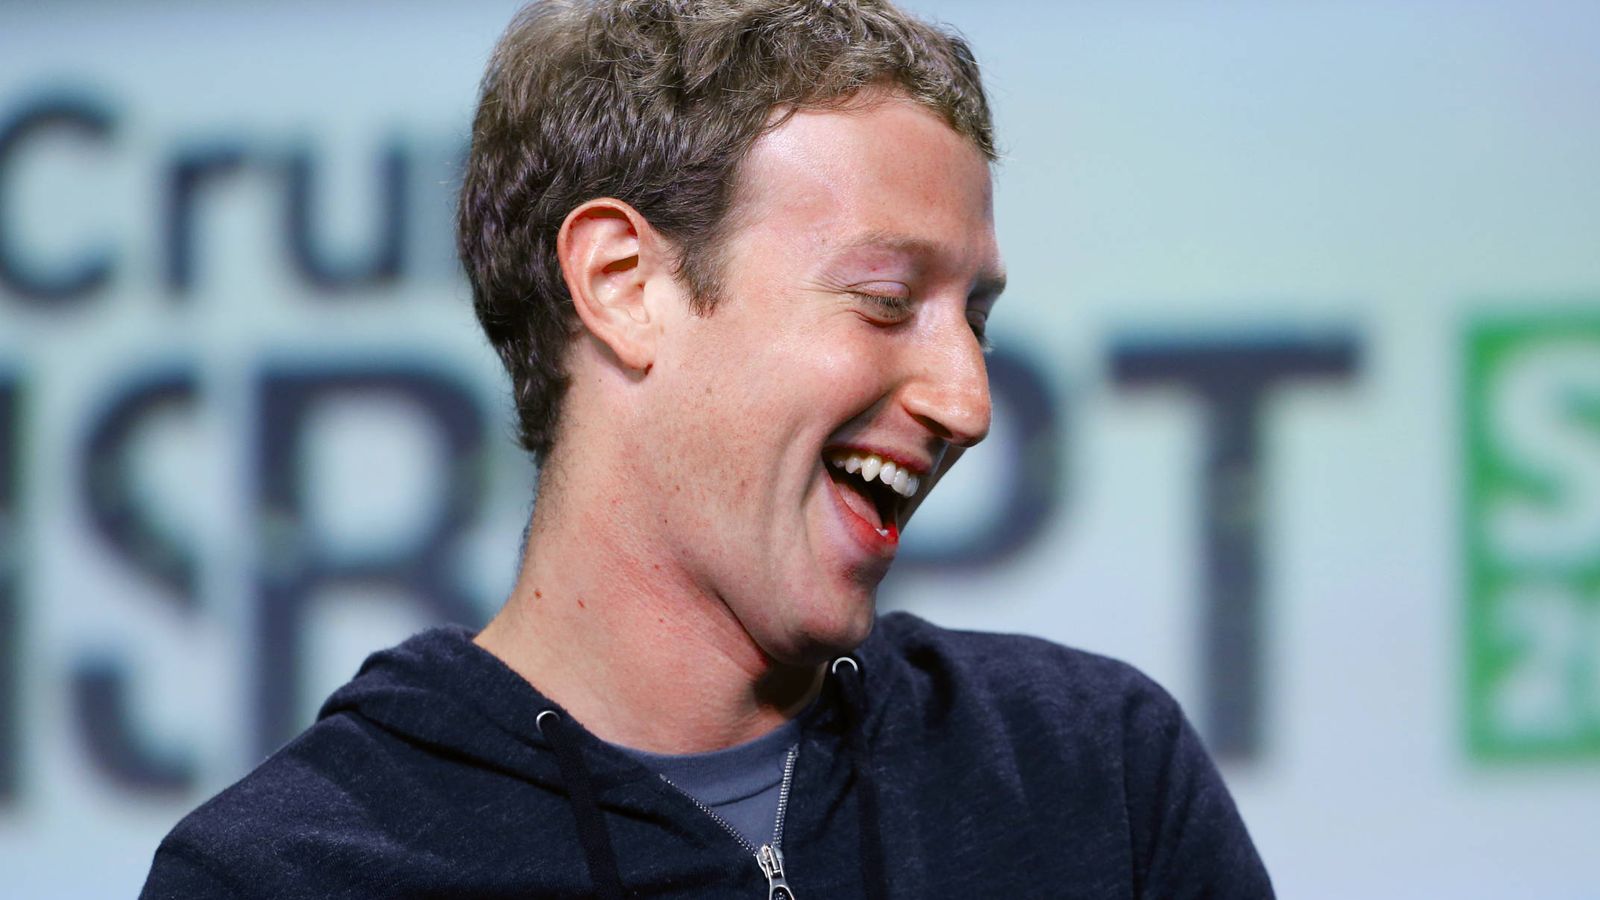 Foto: Mark Zuckerberg, fundador de Facebook, es uno de los directivos que cobra 1 dólar al año. (Foto: Reuters)